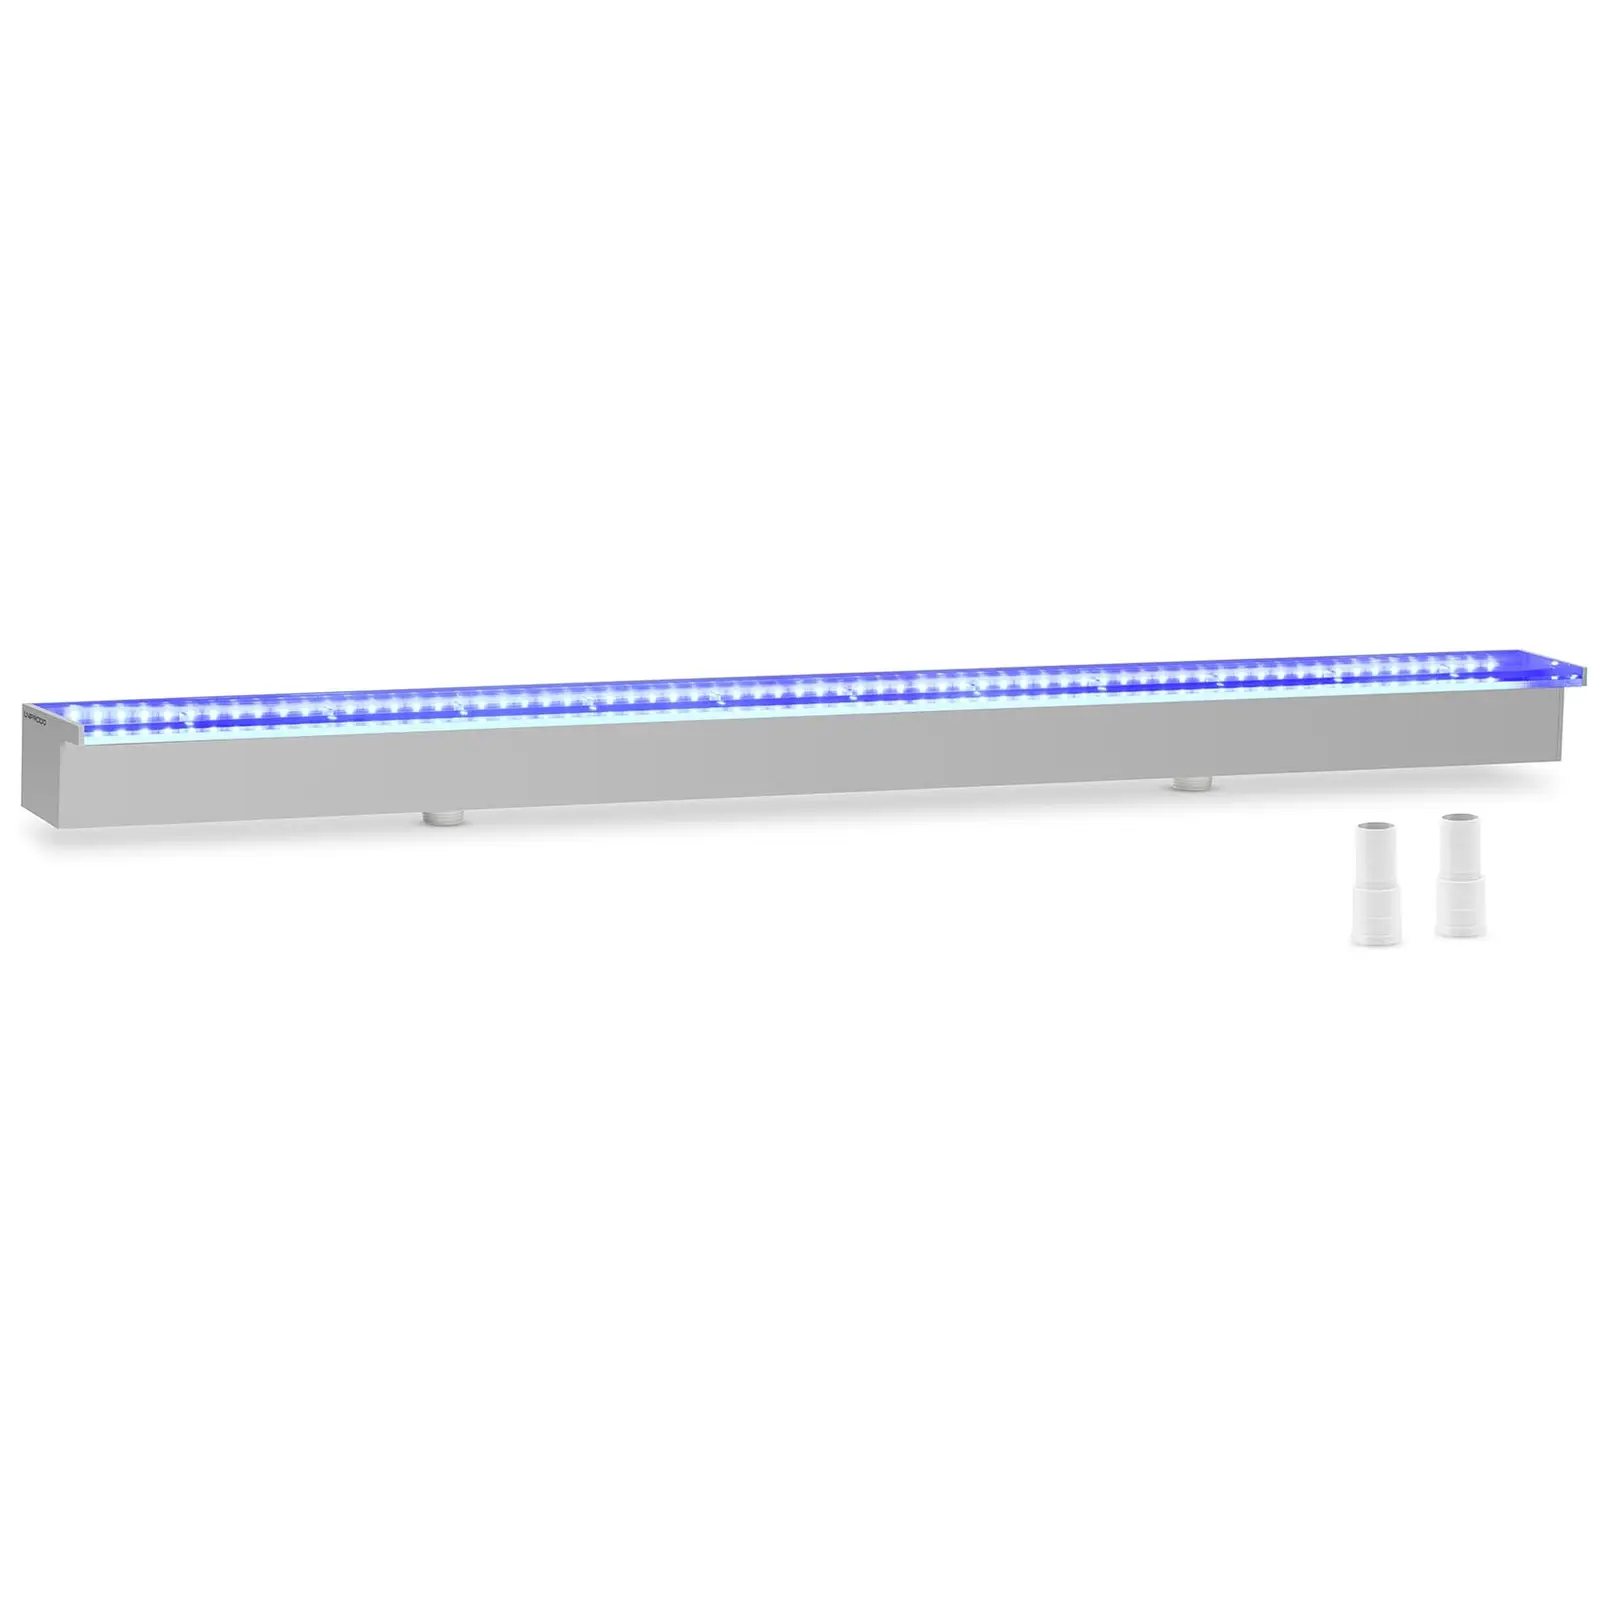 Cascada para piscina - 120 cm - Iluminación LED - azul/blanco - salida de agua: 30 mm